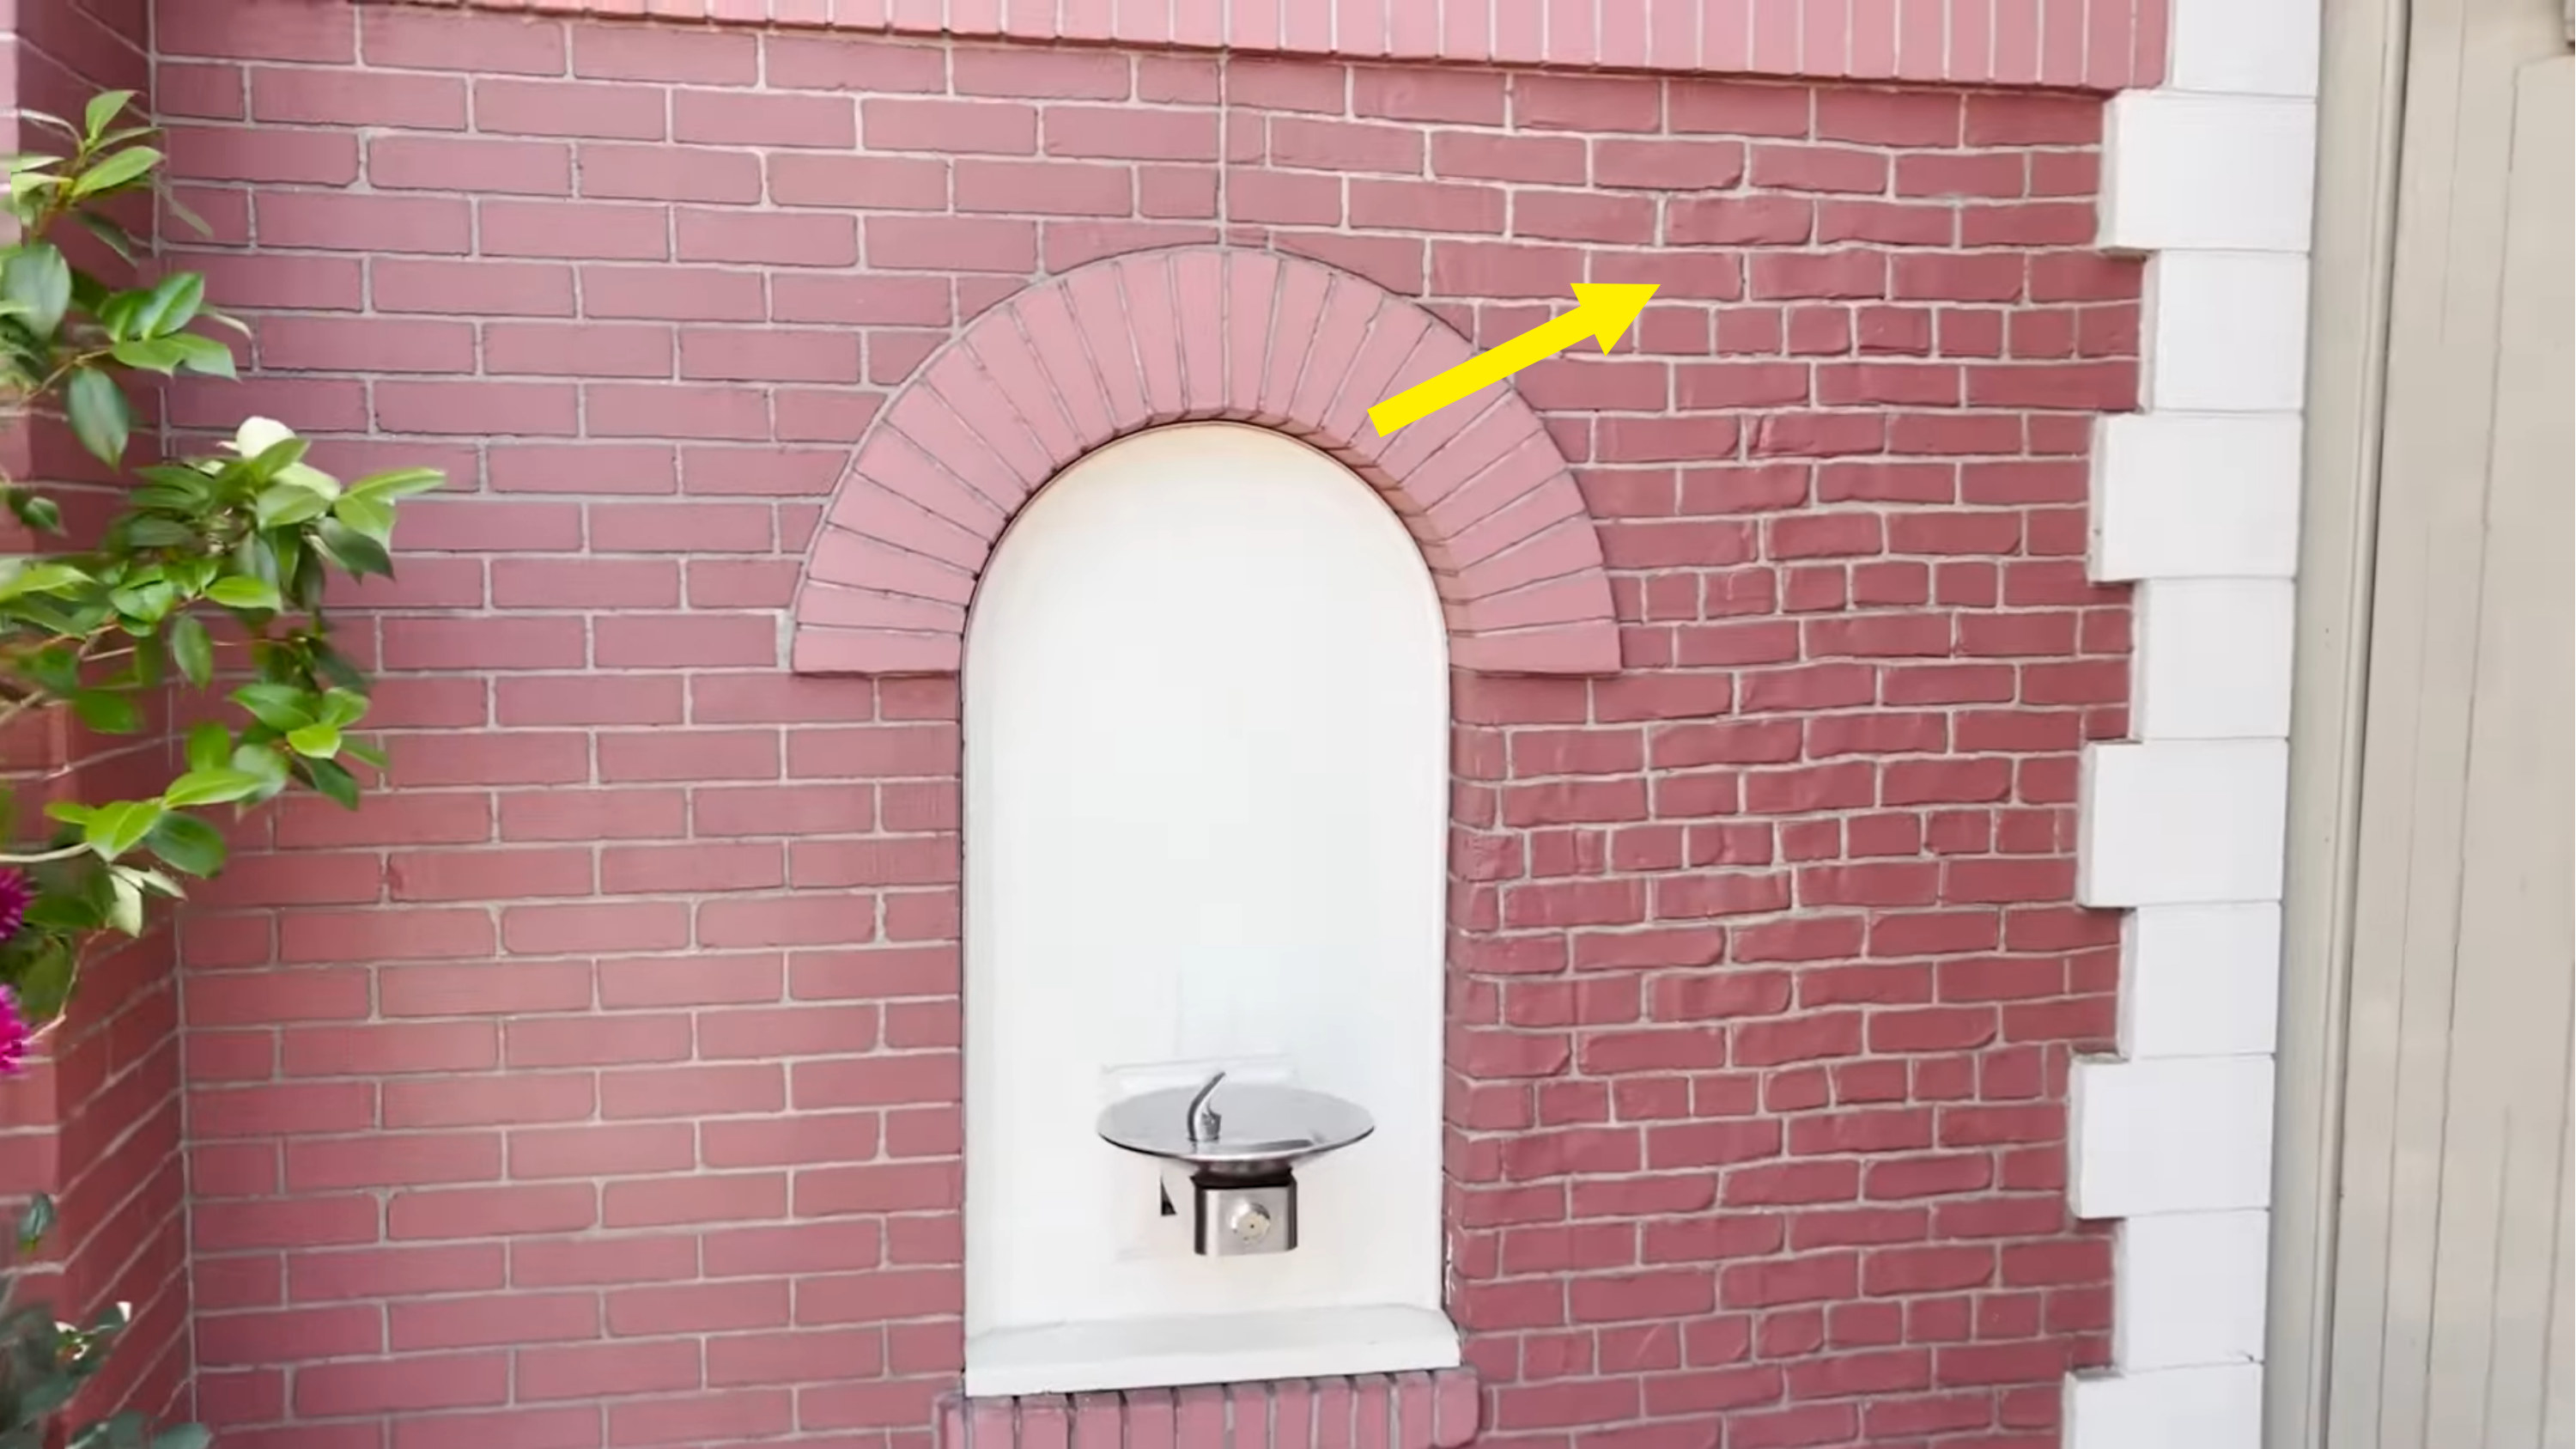 arrow pointing to the bricks